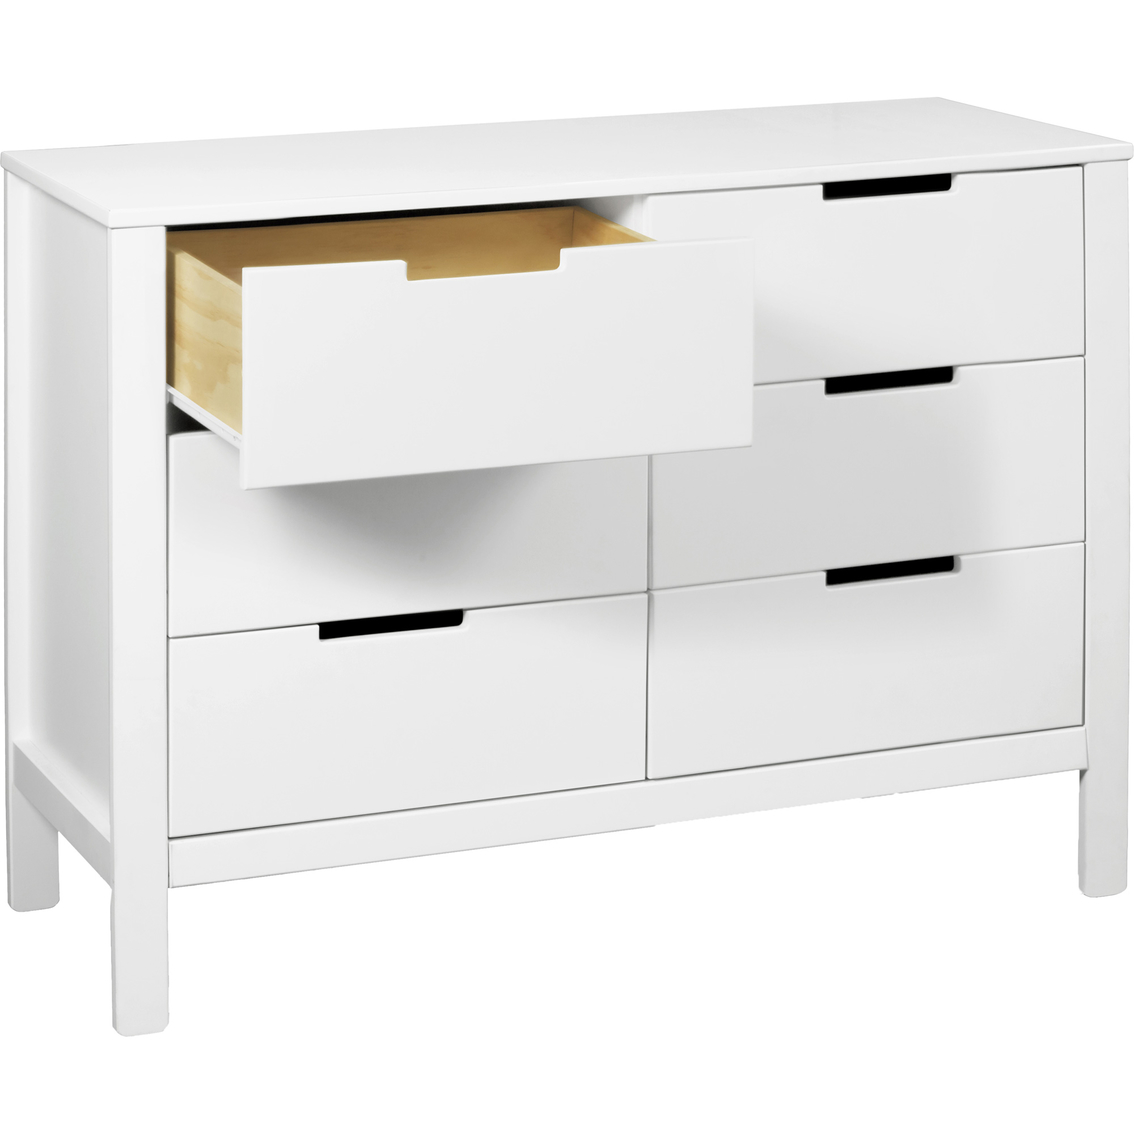 DaVinci Colby 6 Drawer Dresser - Image 3 of 8